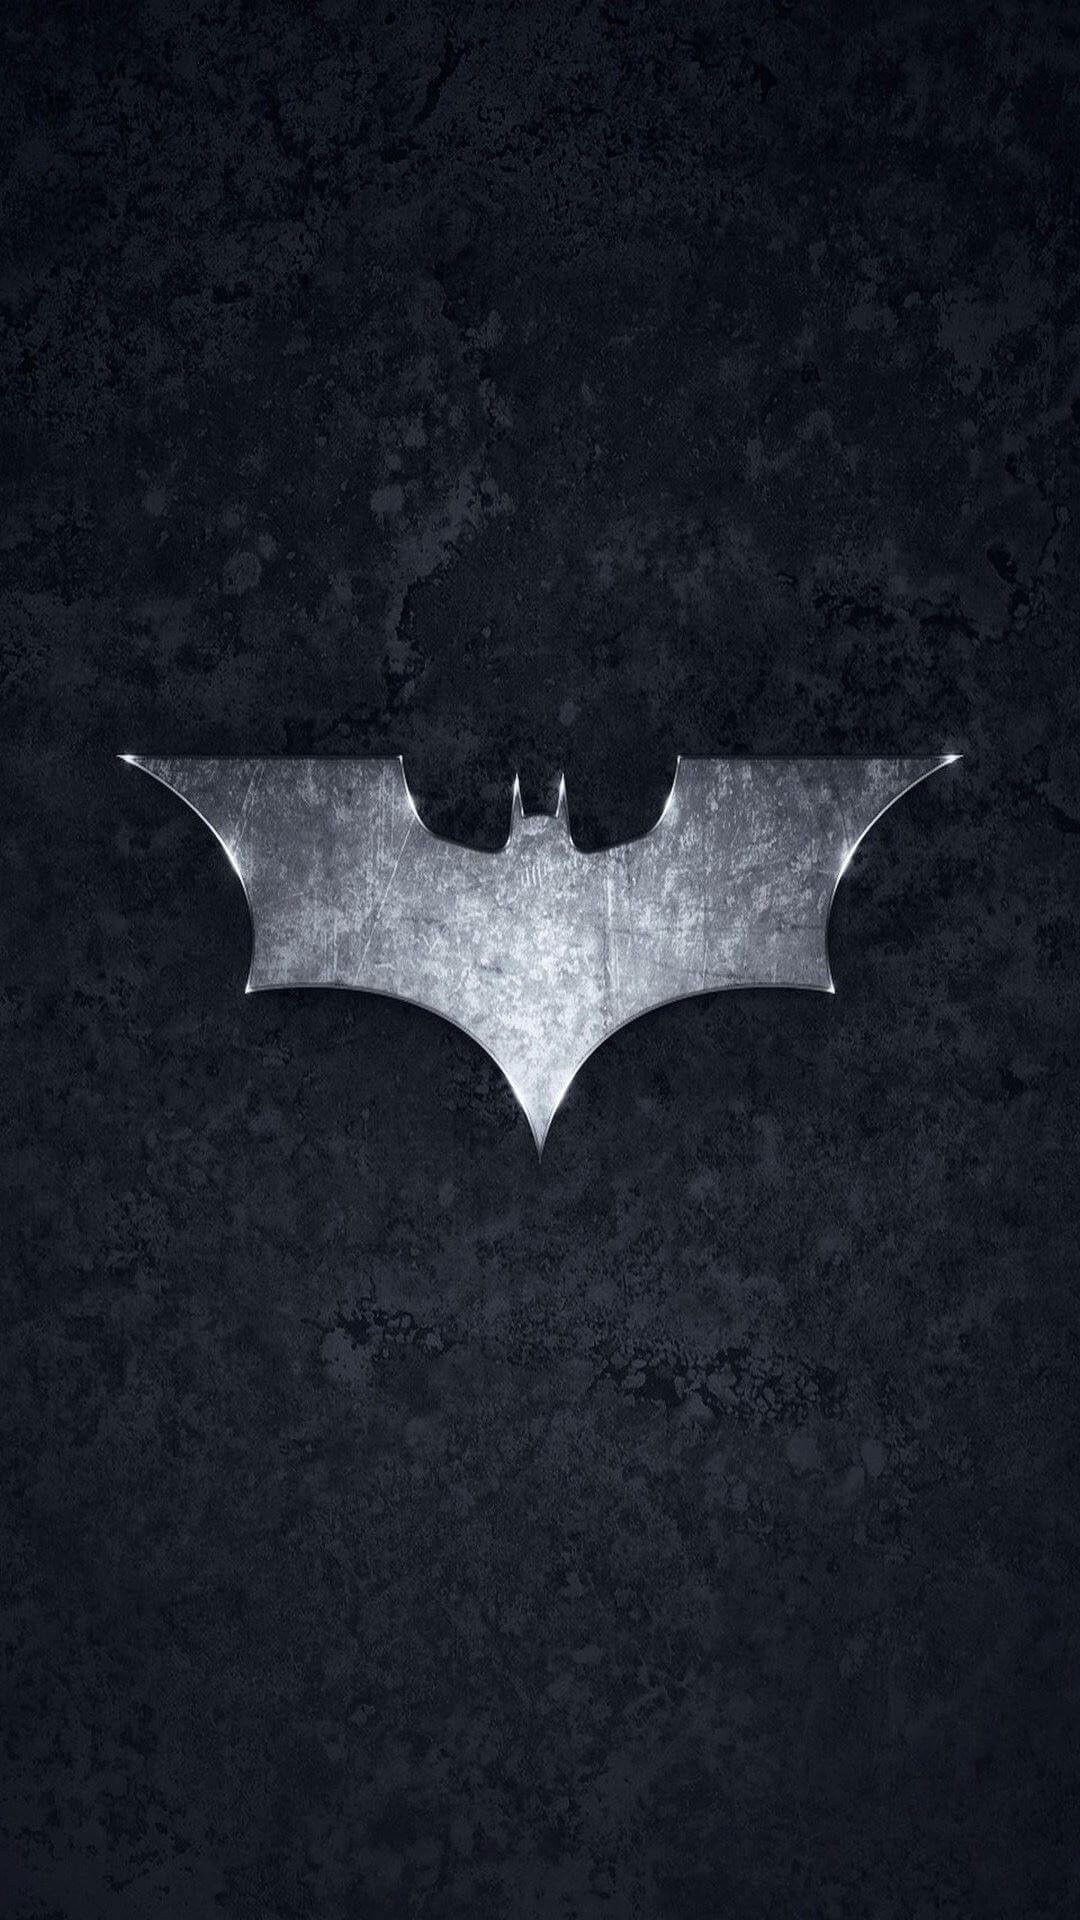 Batman VS Superman HD Wallpaper for Galaxy S4 / S5. Wallpaper